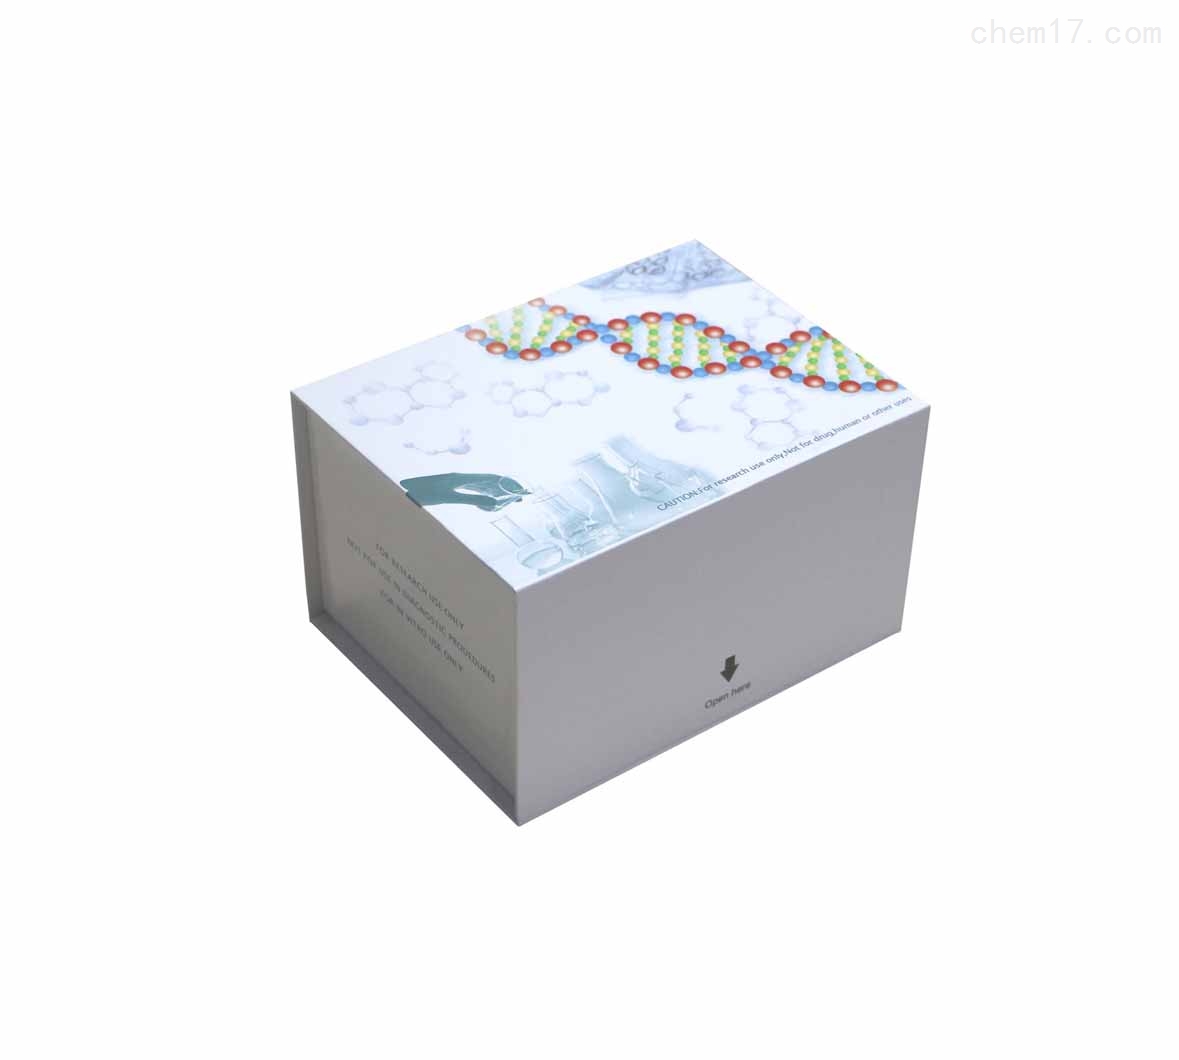 大鼠雄激素受体(AR)ELISA试剂盒现货说明书